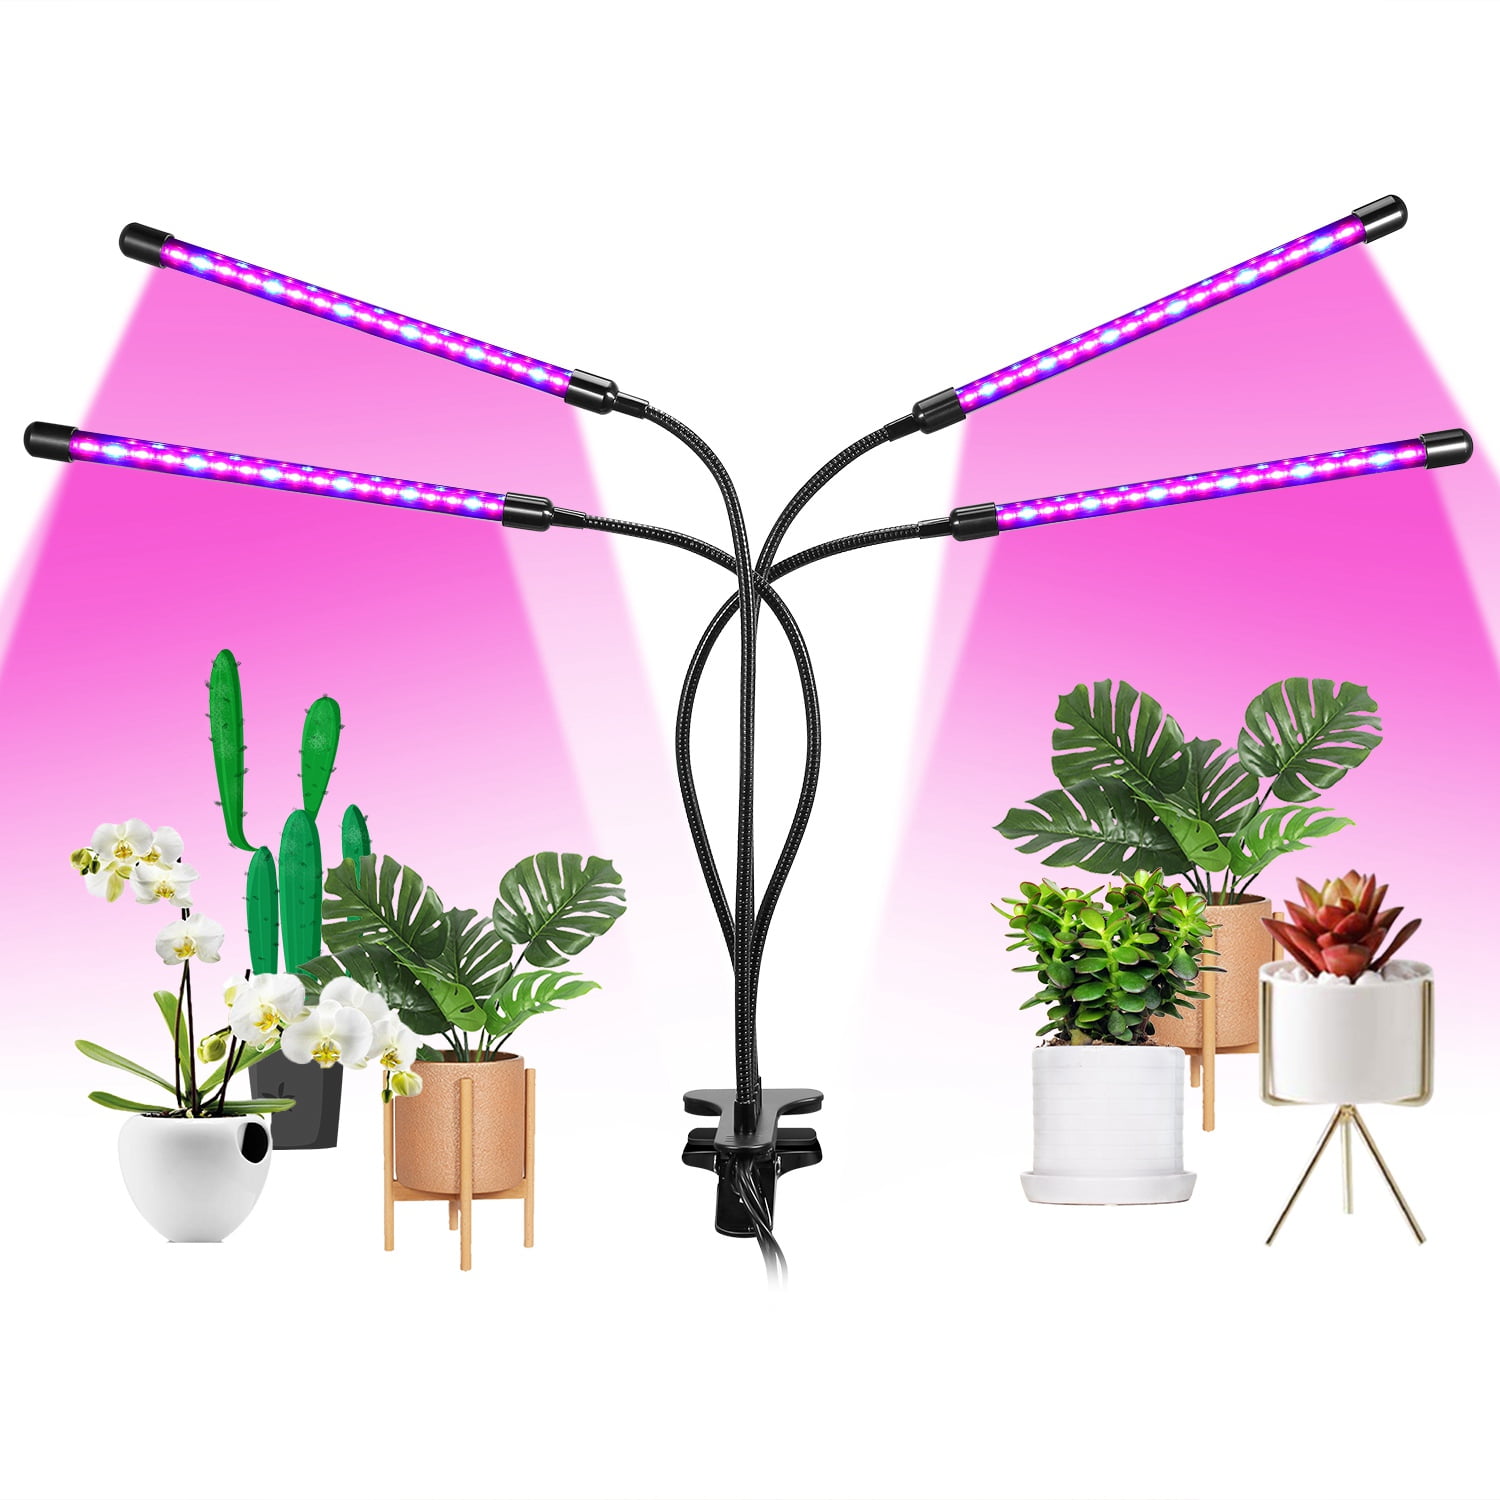 80 LED Grow Light Bulb Indoor Plants Growing Lights Full Spectrum Flower Lamp 